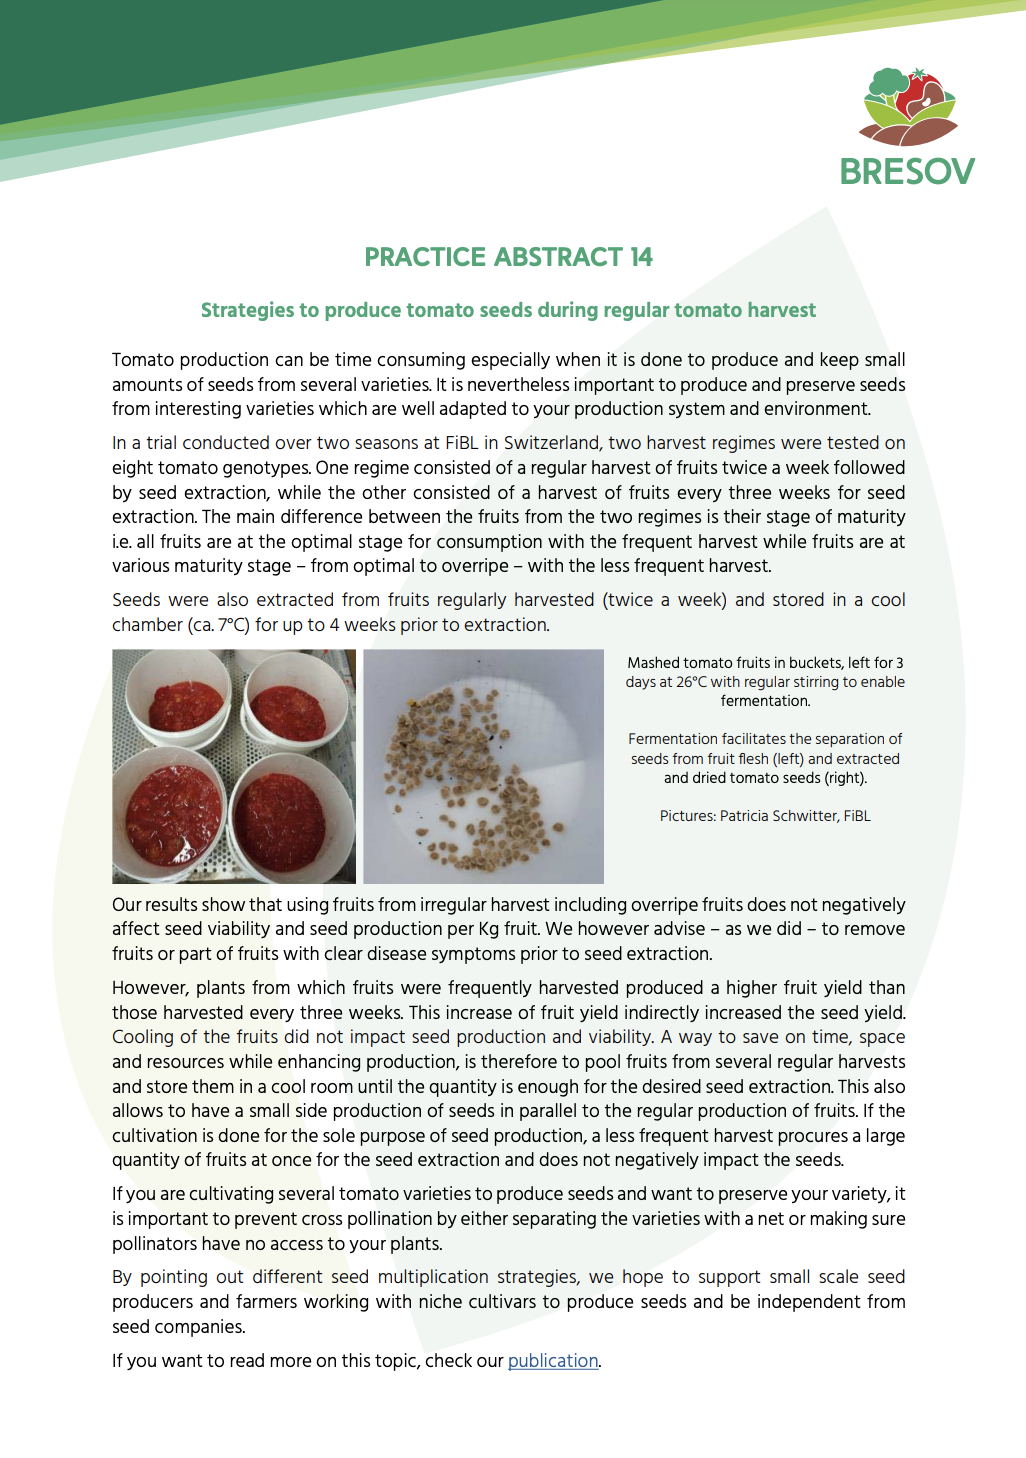 Estrategias para producir semillas de tomate durante la cosecha regular de tomate (Resumen de práctica de BRESOV)